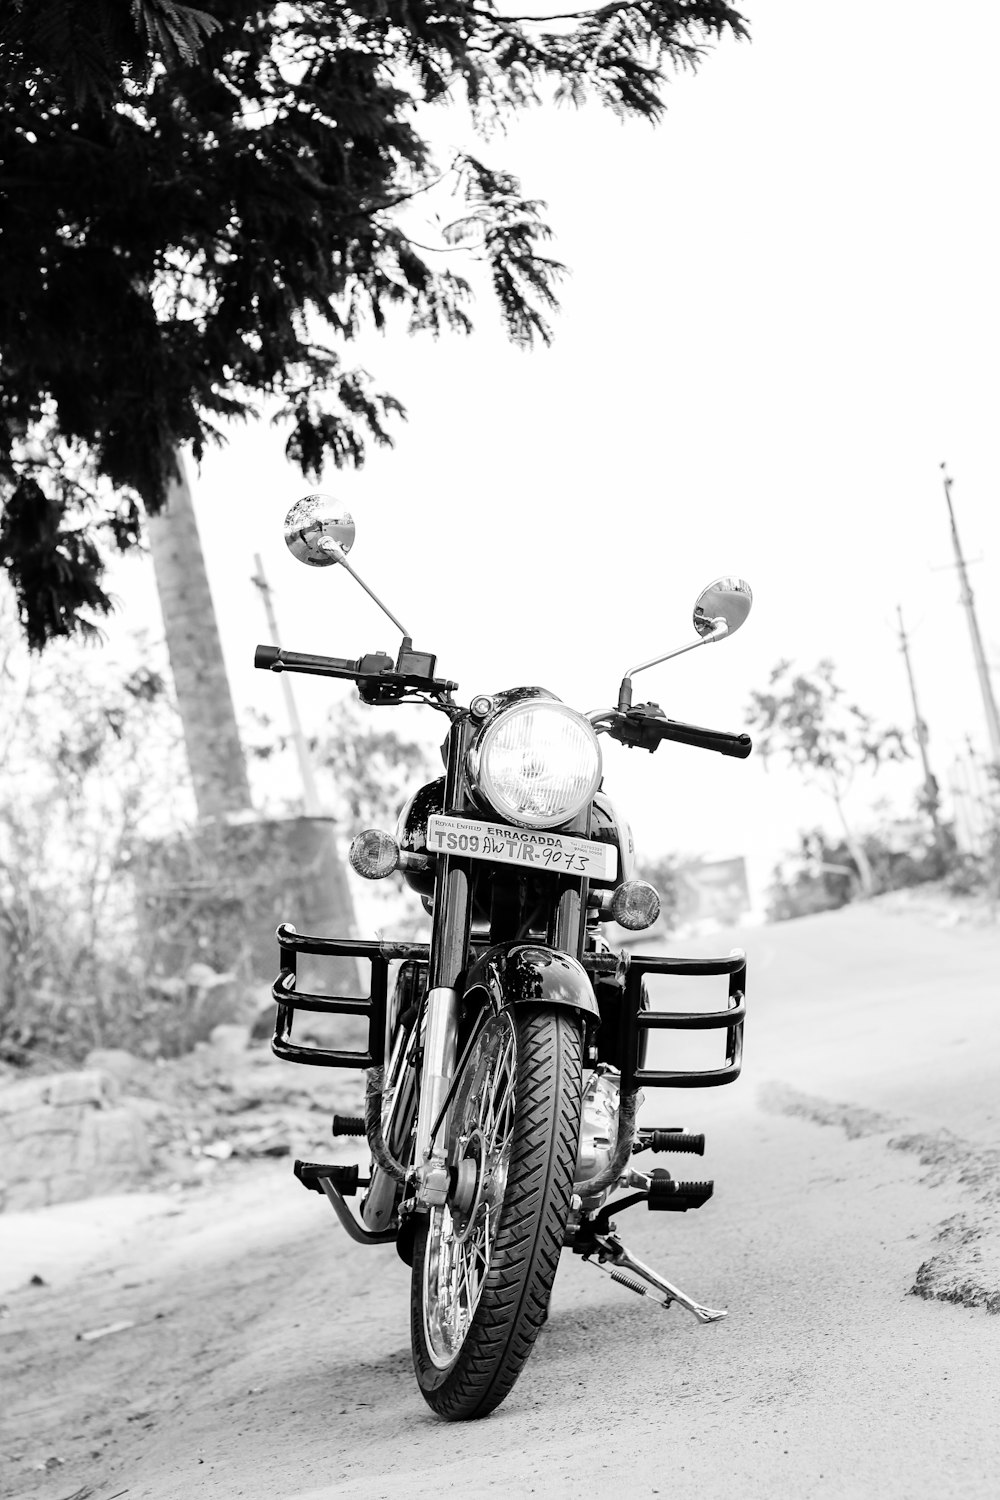 Photo en niveaux de gris d’une moto garée sur la route